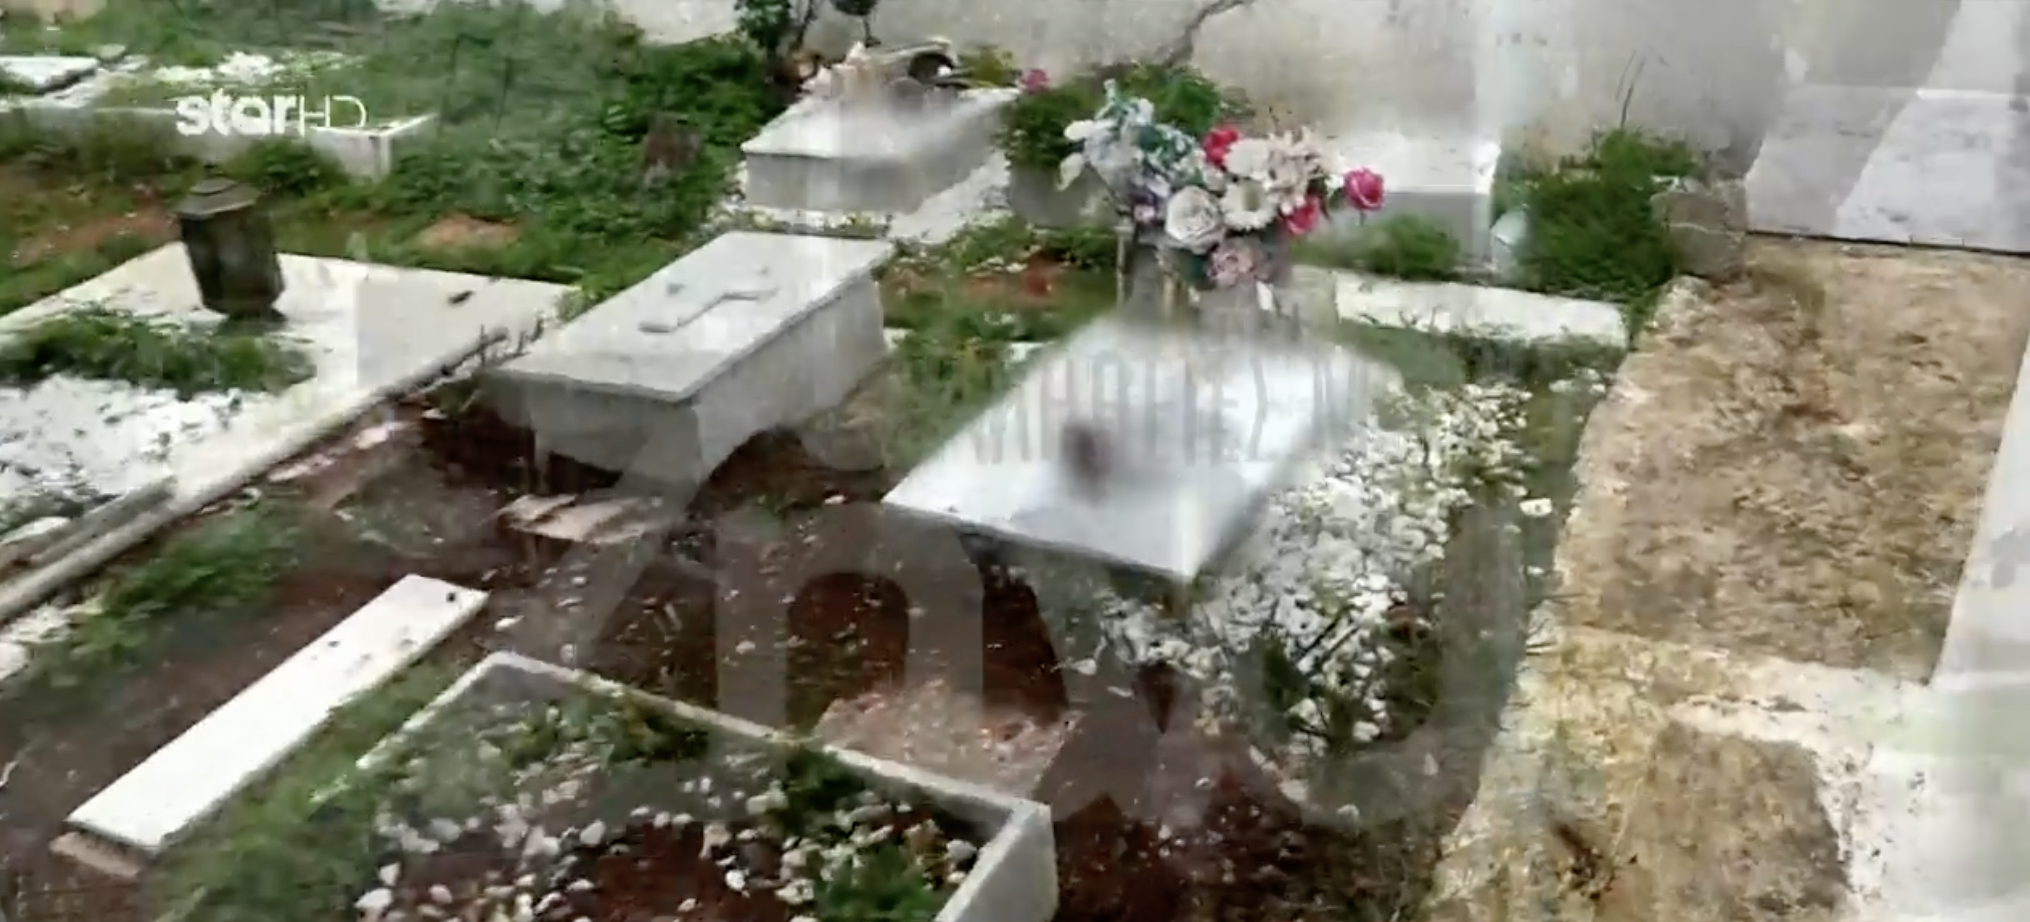 Σοκ στα Καλύβια! Παράνομο νεκροταφείο με δεκάδες τάφους παιδιών σε αυλή ιερέα